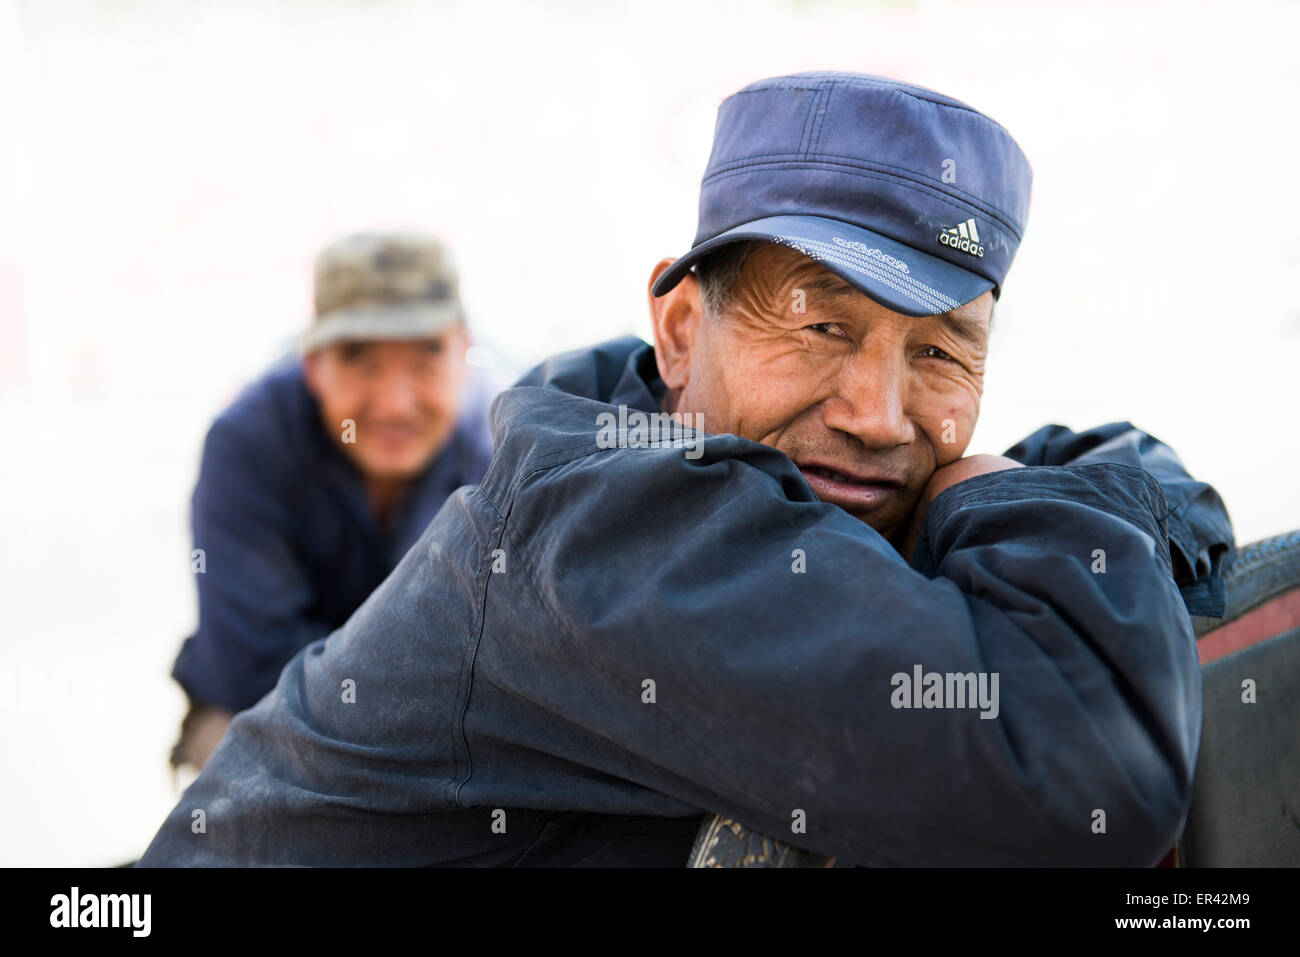 Ein chinesischer Mann trägt eine blaue Adidas Mütze Stockfotografie - Alamy